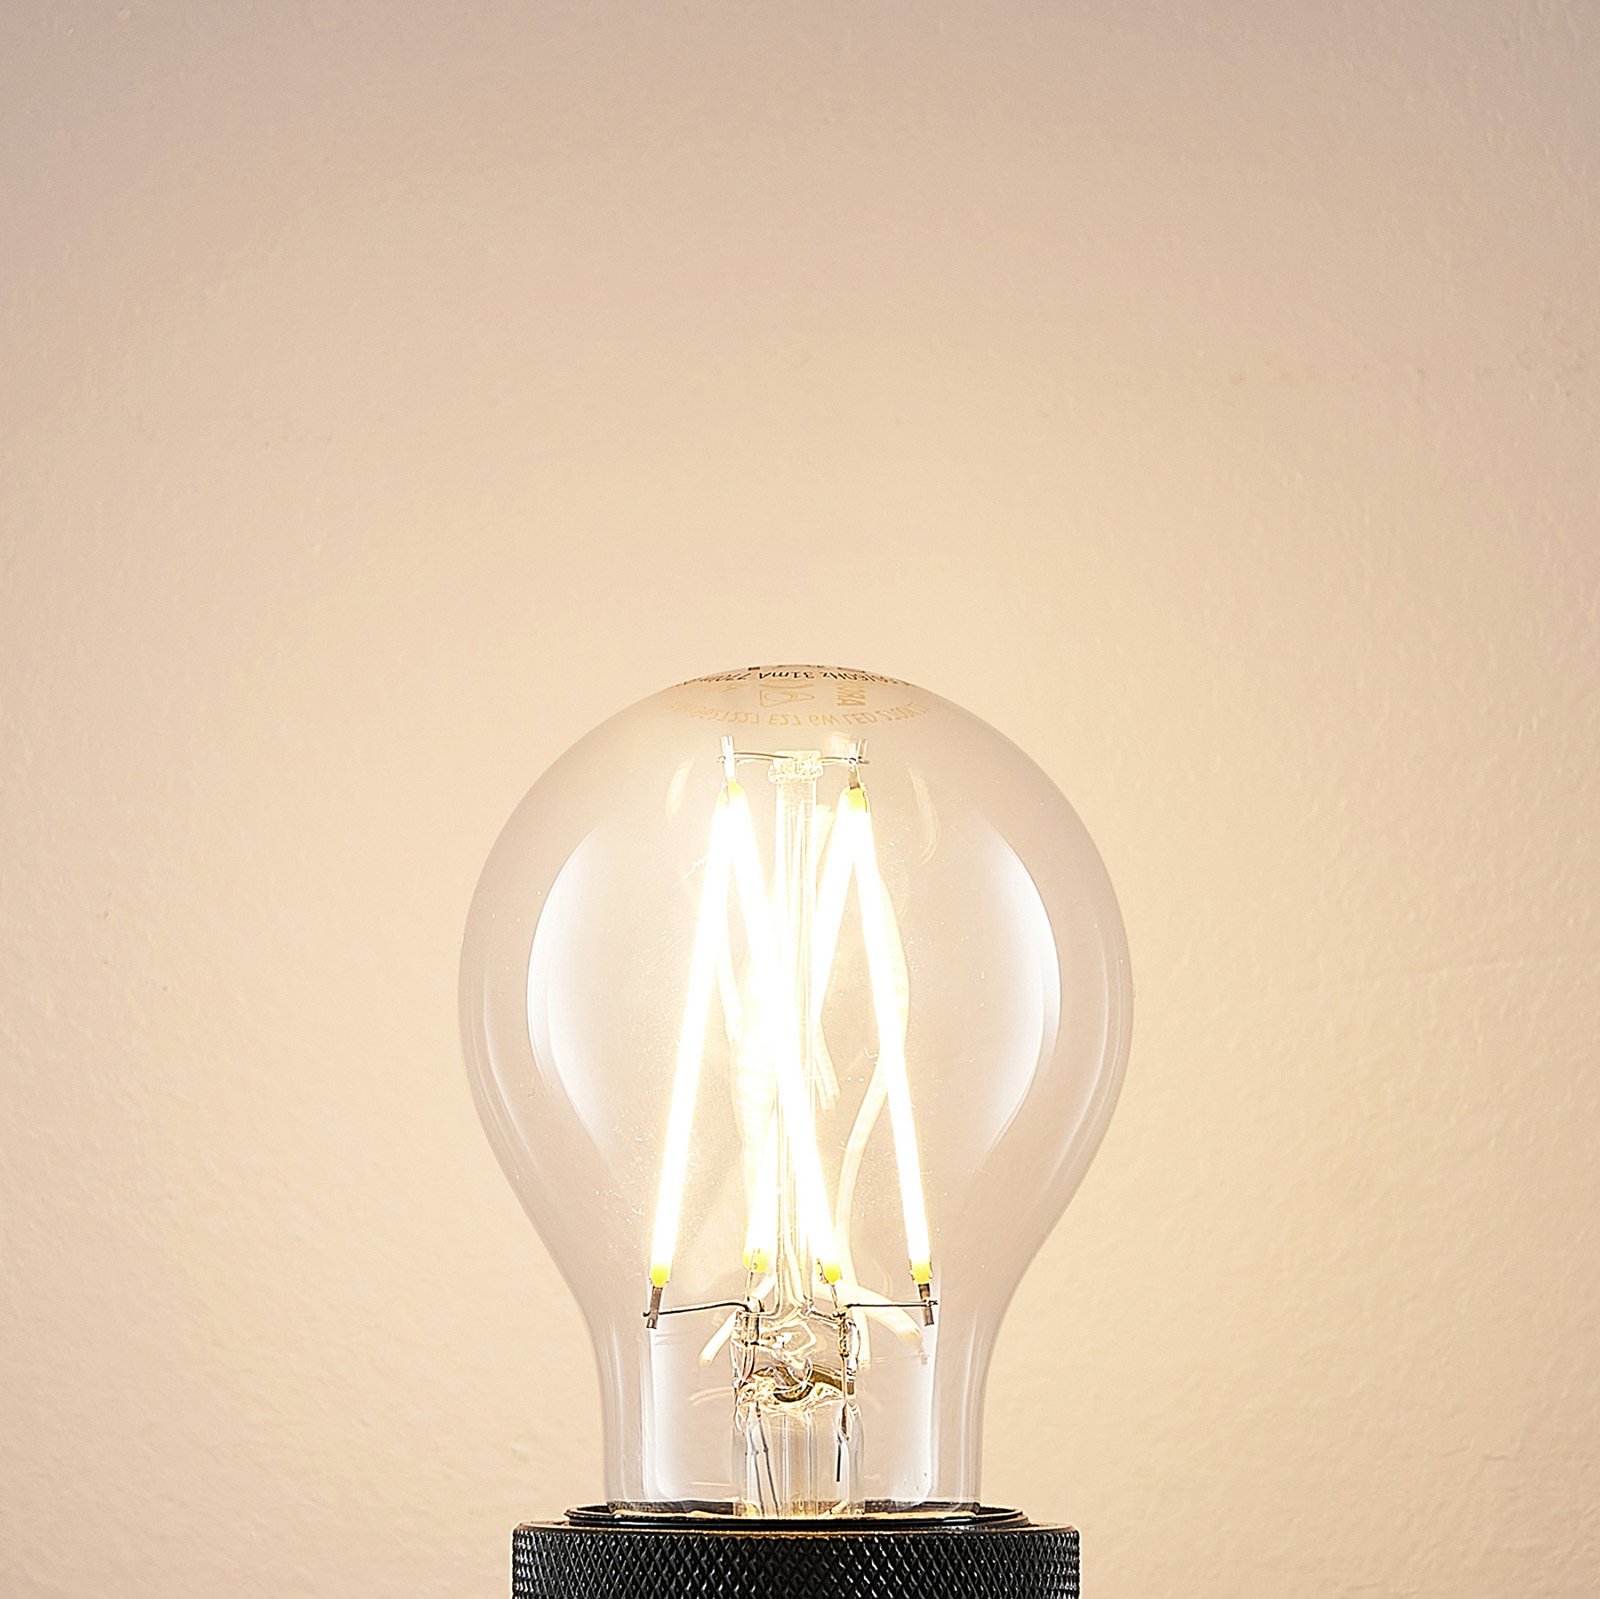 LED-Lampe E27 6W 2.700K Filament,dimmbar klar 2er